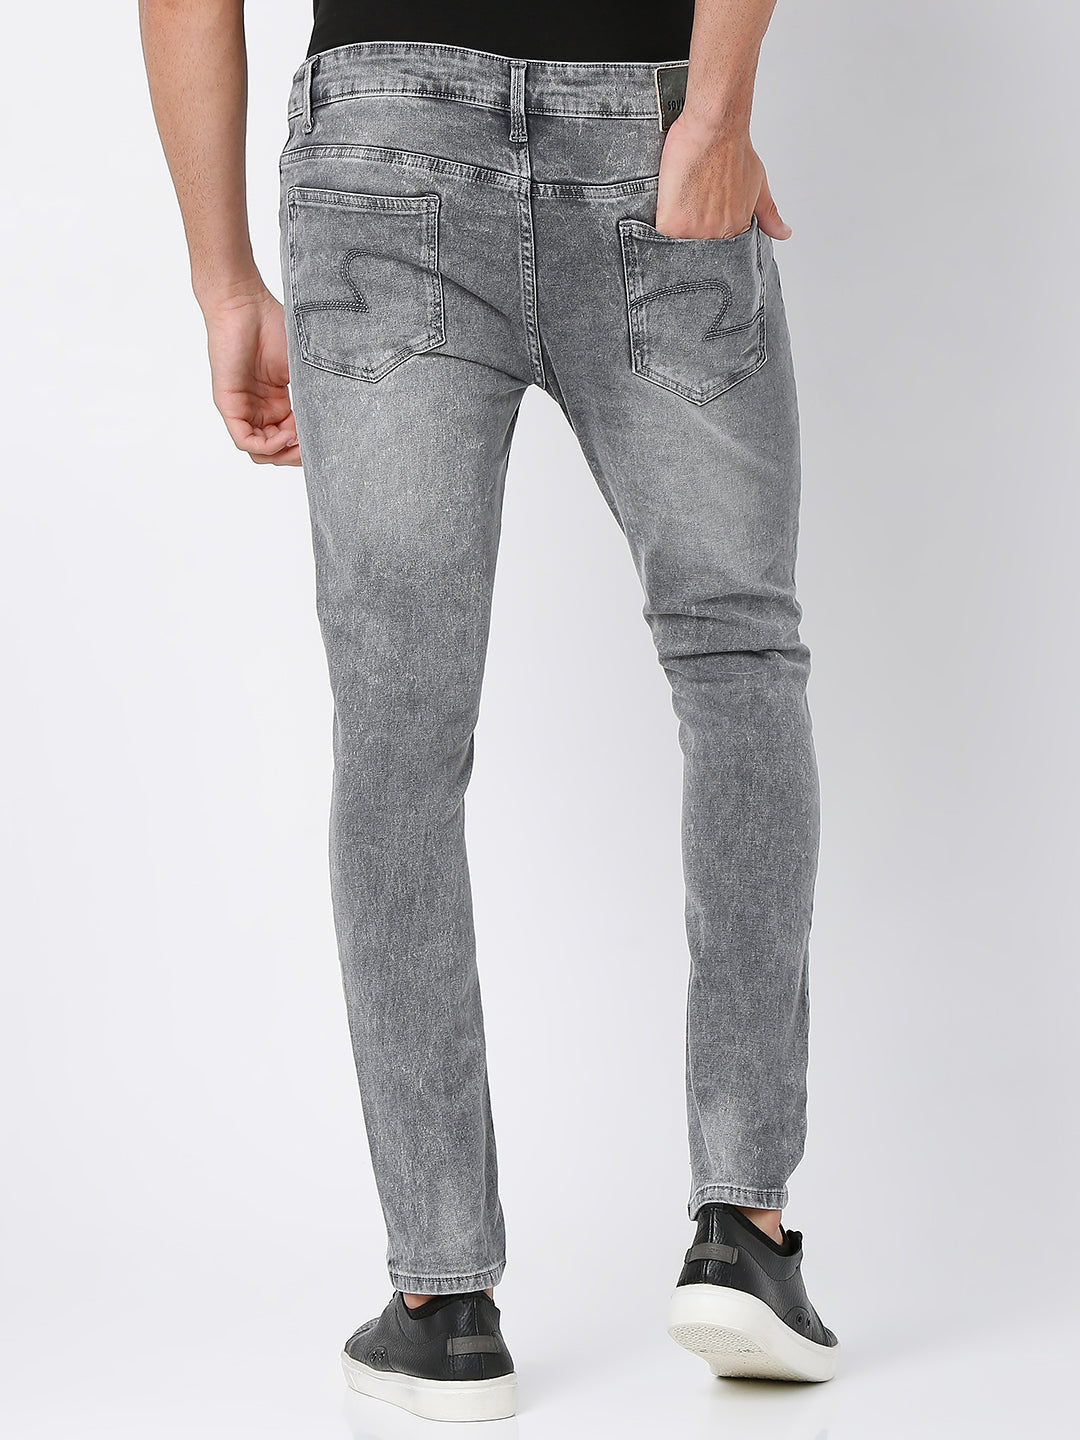 Spykar Mid Grey Cotton Super Slim Fit Tapered Length Jeans For Men (Super Skinny)